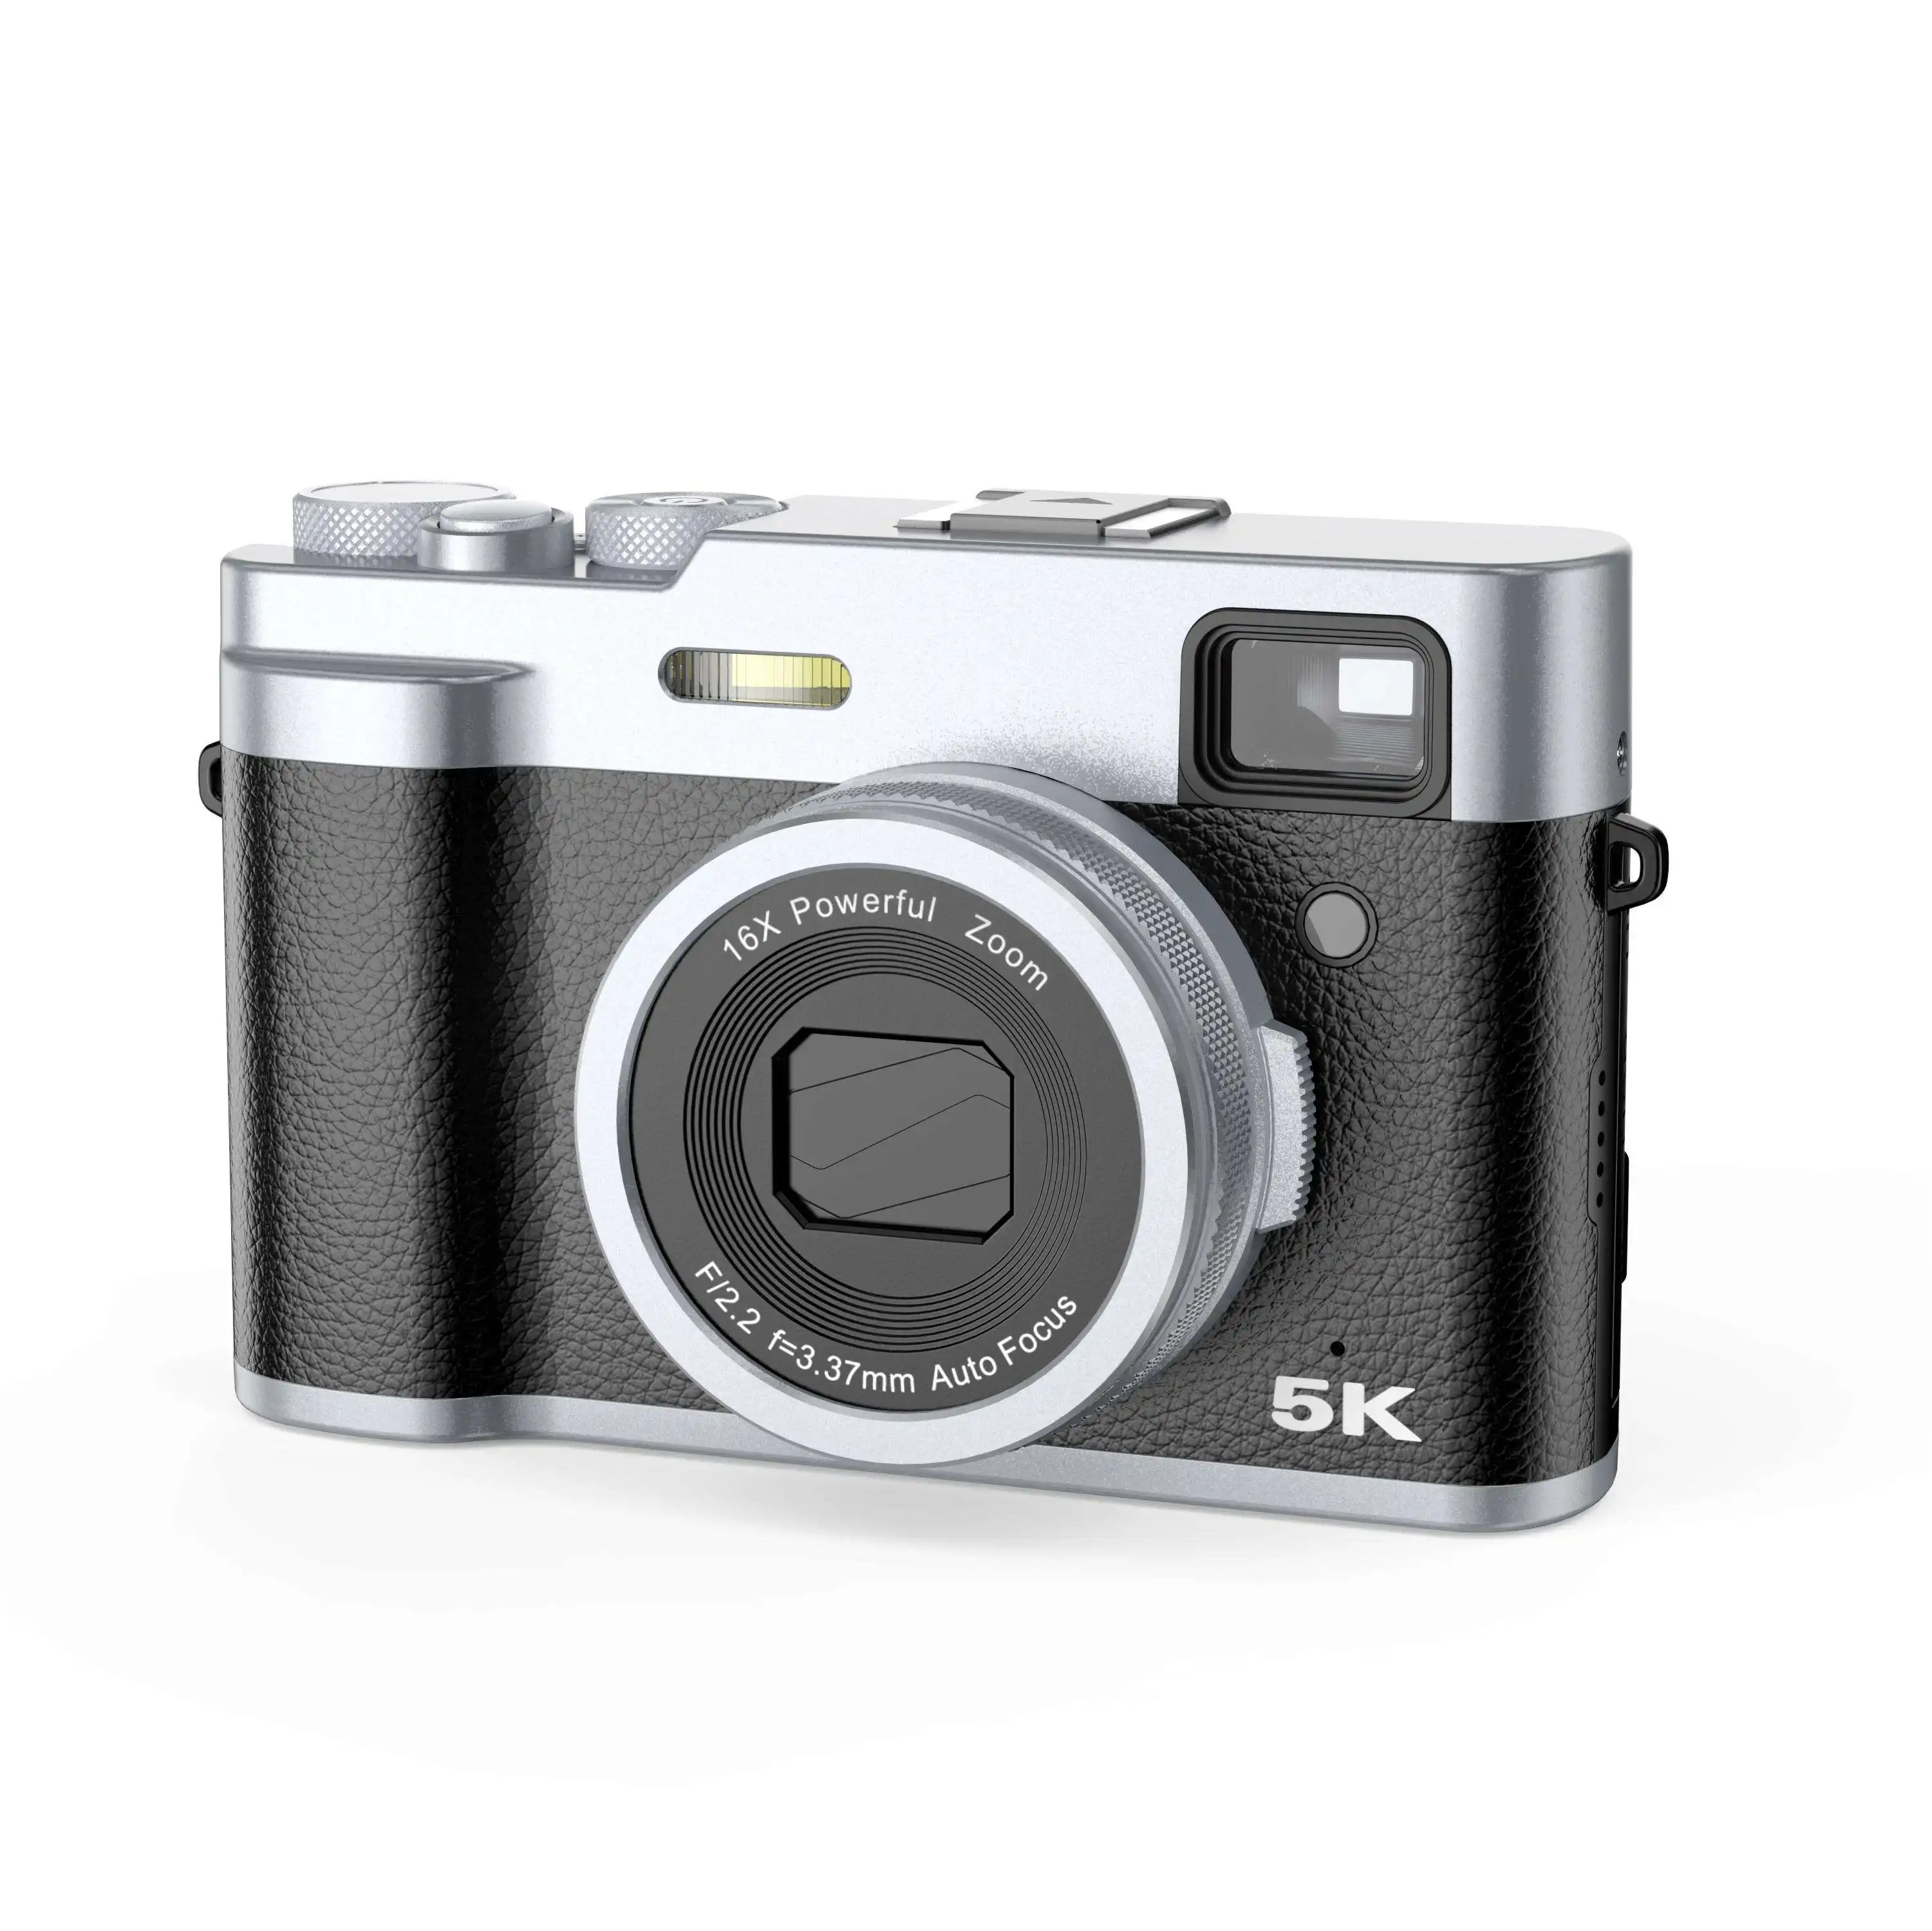 Nuovissimo obiettivo HD in stile DSLR a buon mercato 5K48MP videocamera digitale portatile professionale Vlog fotocamera 48 Mega pixel Mini fotocamera digitale